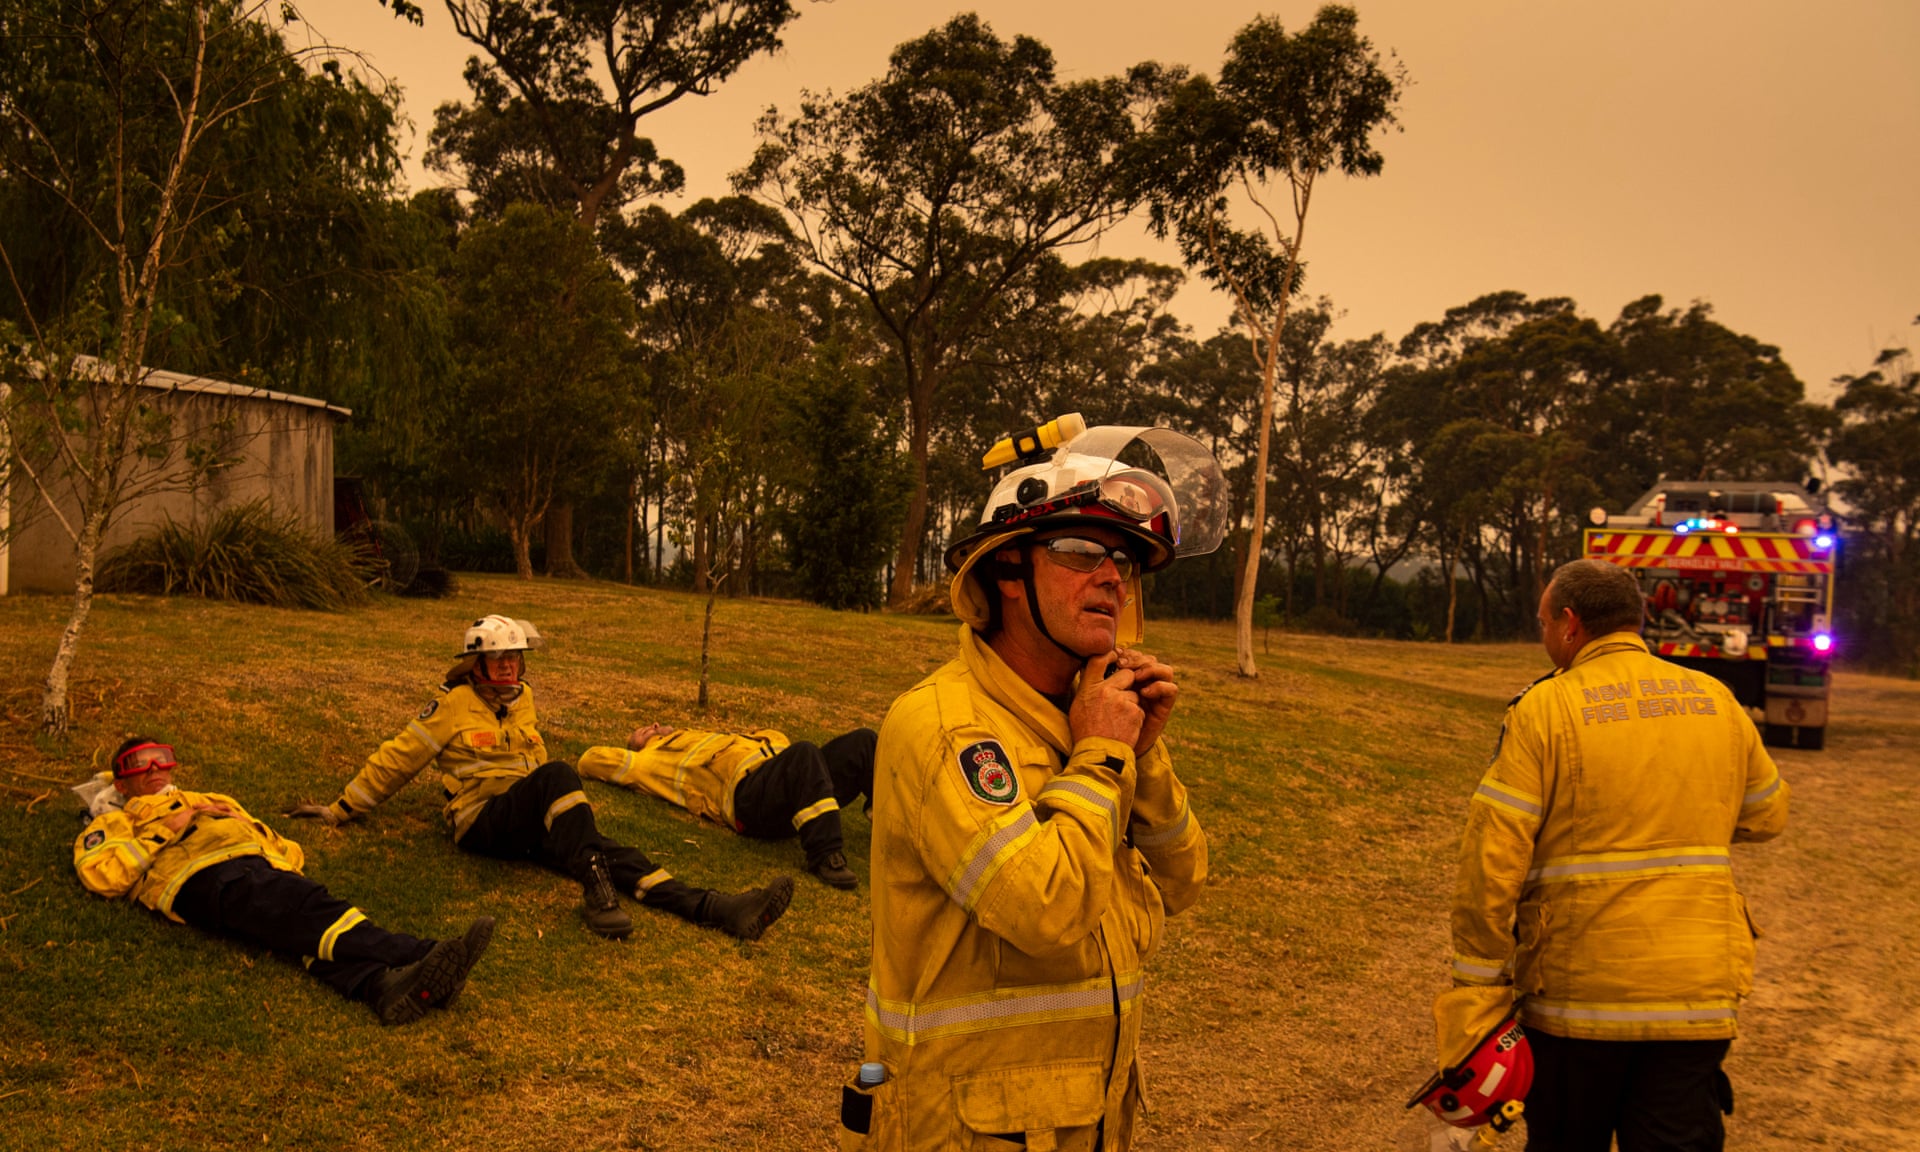 Вогняне торнадо сформувалось в Австралії внаслідок лісових пожеж